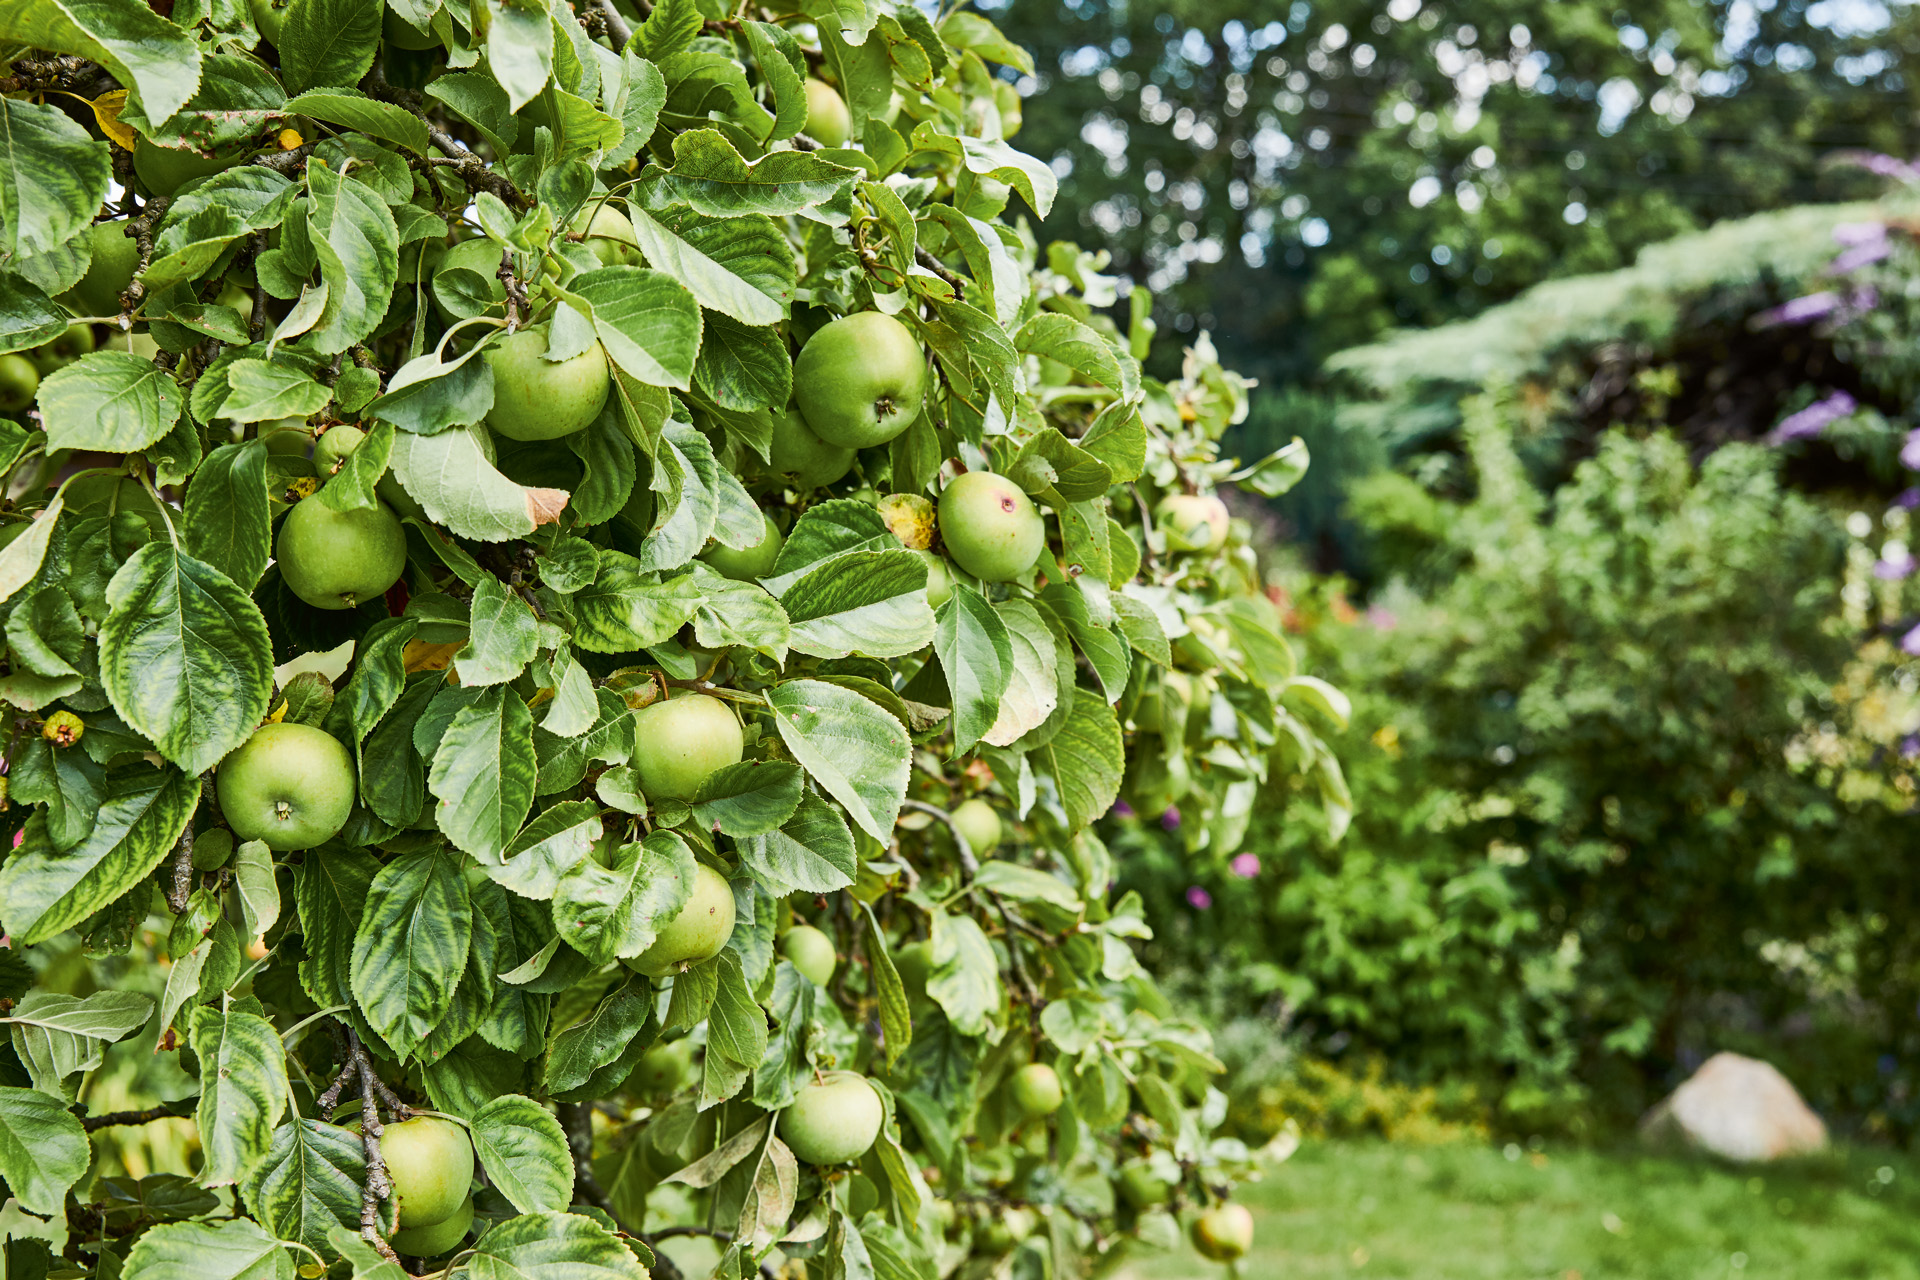 Manzanas verdes en un árbol, con arbustos y otros árboles, con un gran trabajo de cuidado de árboles frutales detrás.